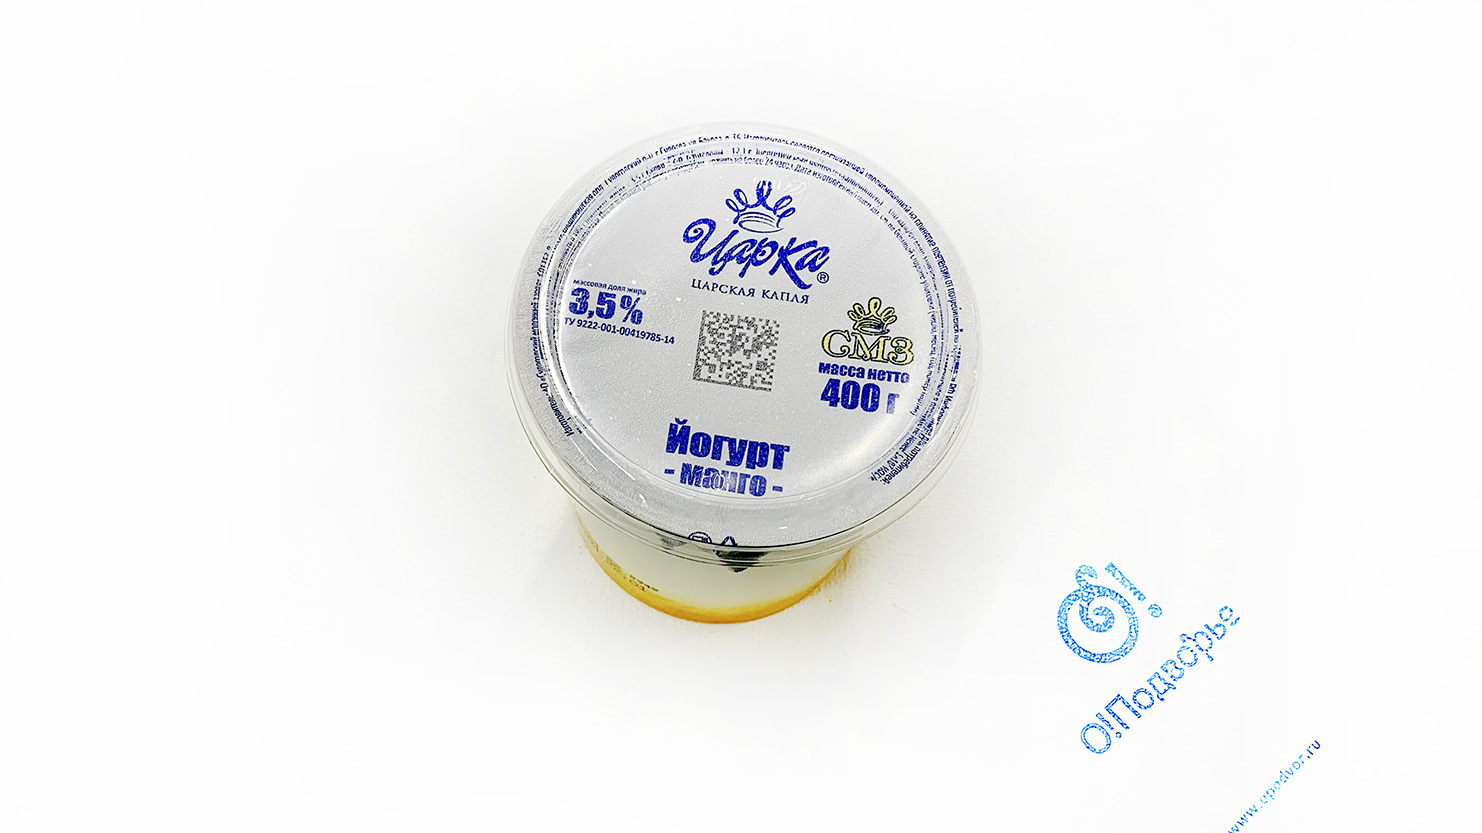 Йогурт манго "Царка" Царская капля, 3,5%, 400 грамм